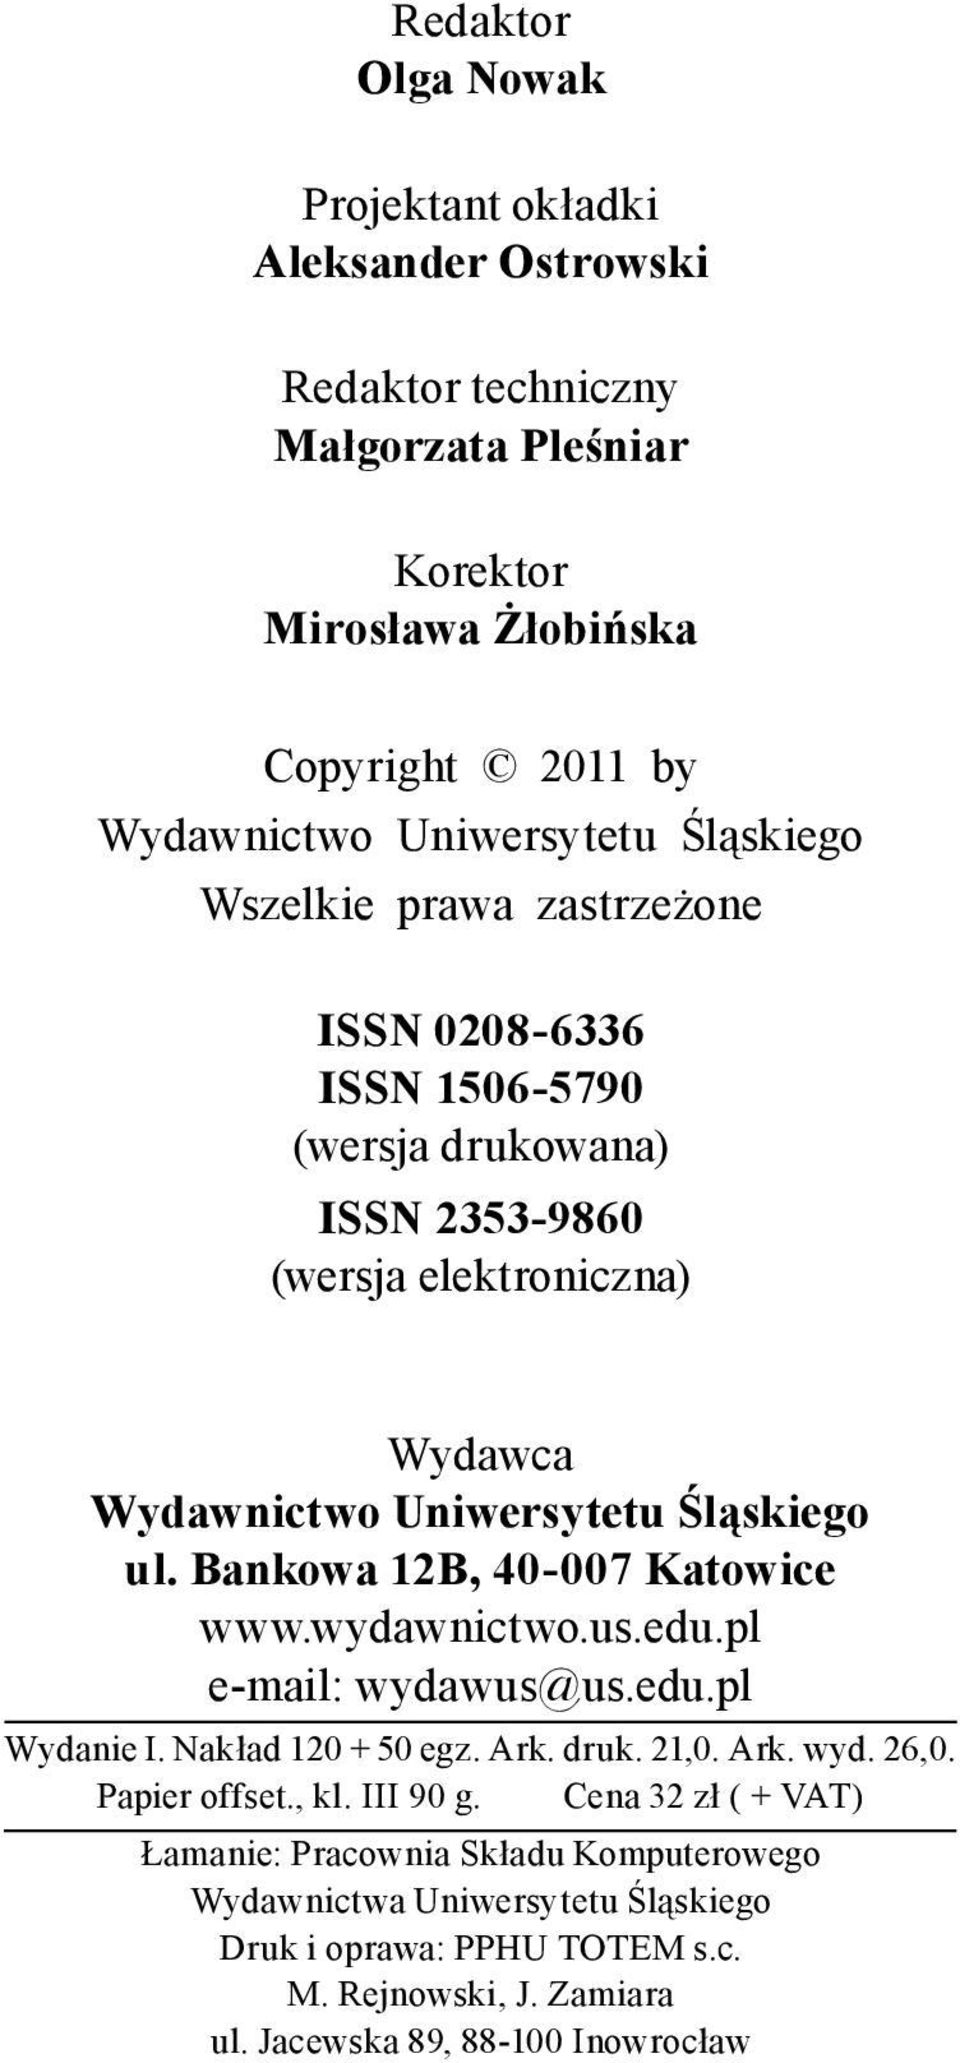 Bankowa 12B, 40 007 Katowice www.wydawnictwo.us.edu.pl e mail: wydawus@us.edu.pl Wydanie I. Nakład 120 + 50 egz. Ark. druk. 21,0. Ark. wyd. 26,0. Papier offset., kl. III 90 g.